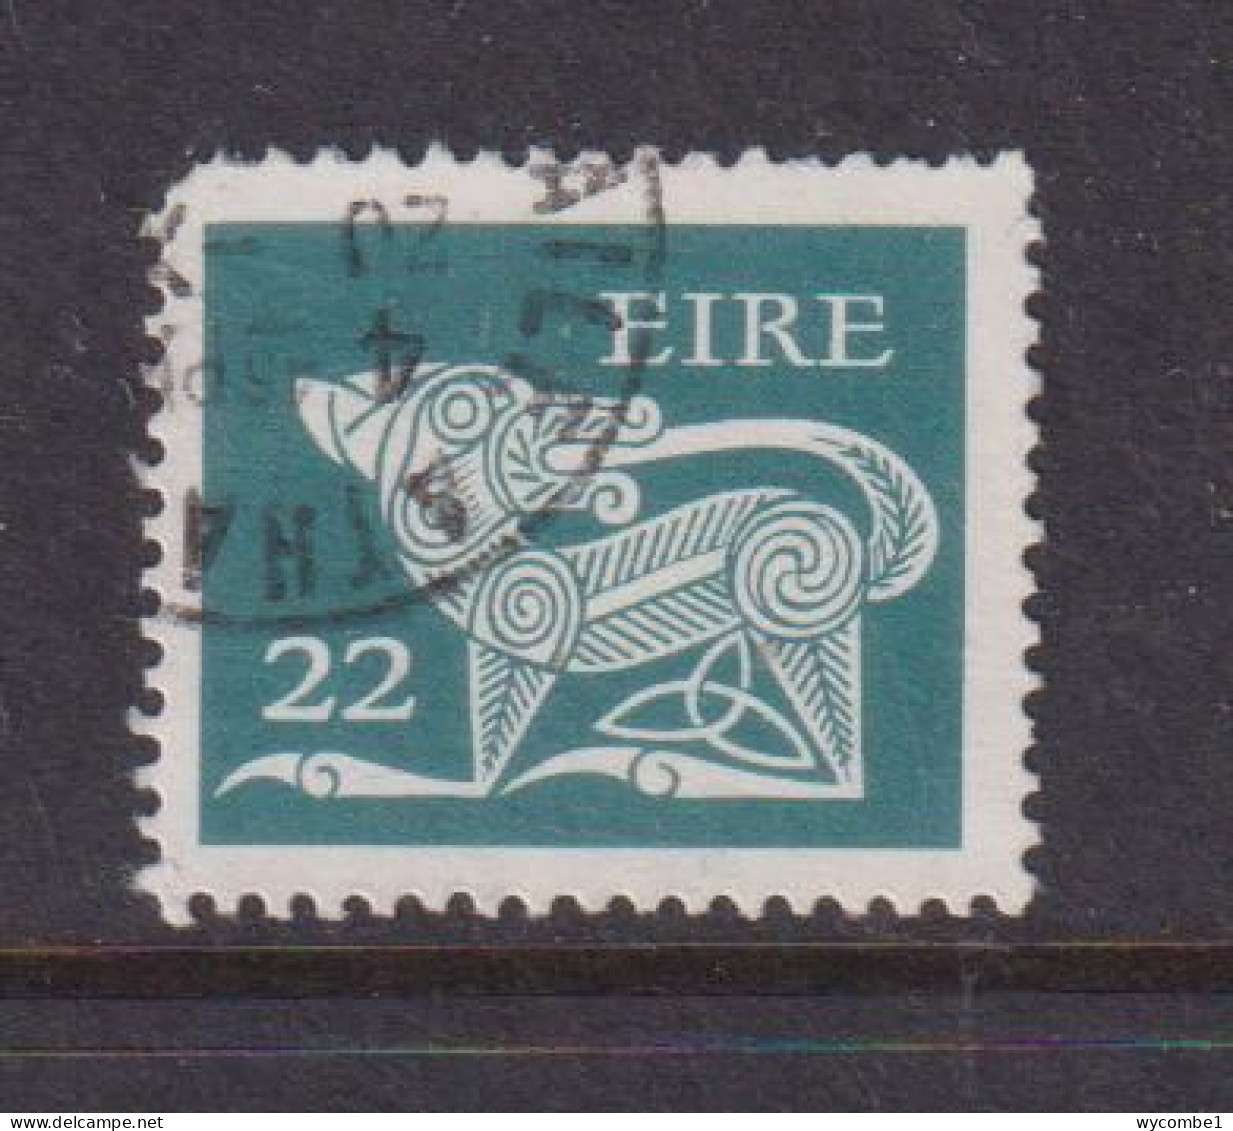 IRELAND - 1971  Decimal Currency Definitives 22p  Used As Scan - Gebruikt